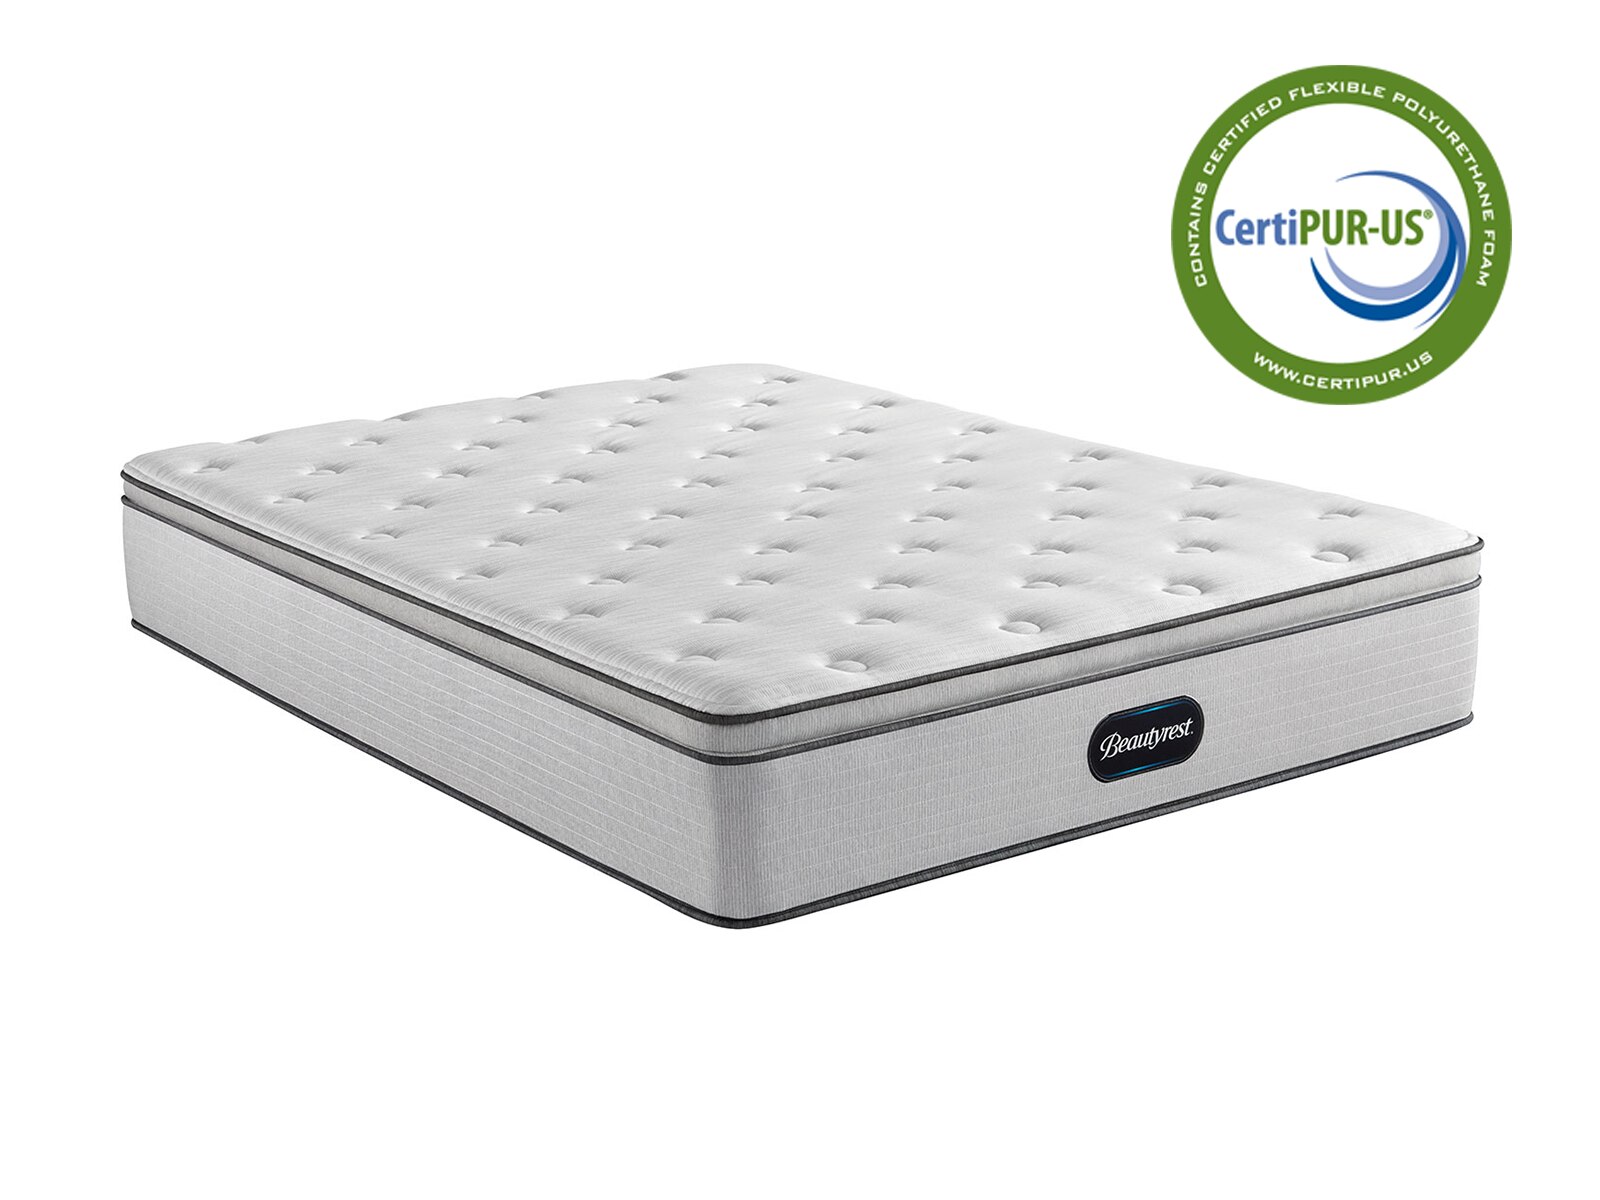 br800 13.5 medium pillow top mattress review